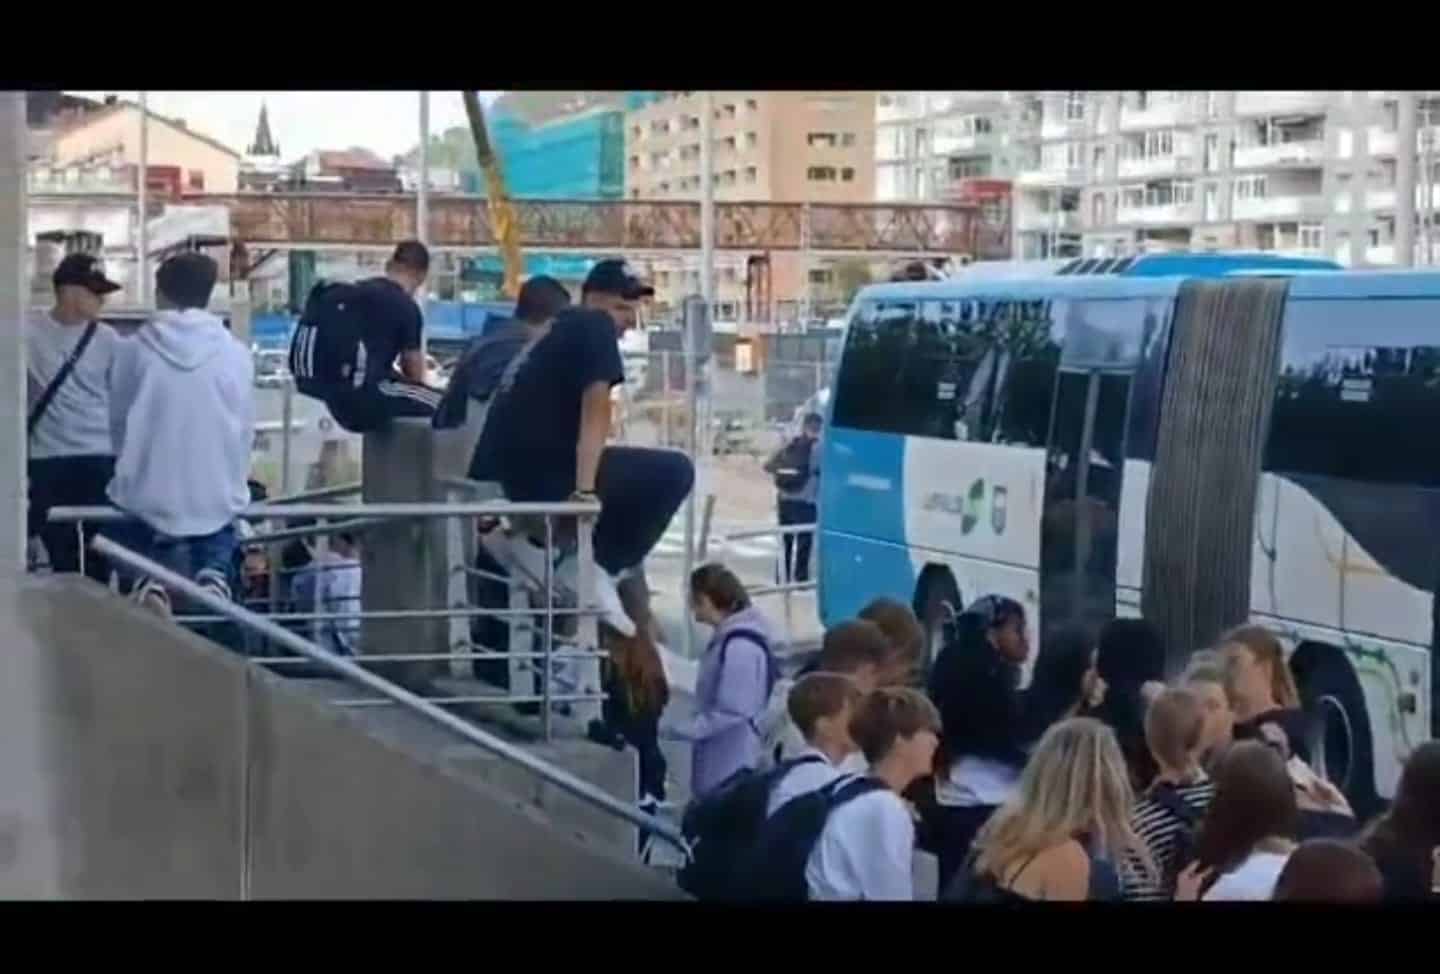 d84982be 1a57 40d0 84e9 c053773d2e0f - Residentes en Federico García Lorca pedirán a la concejala que retire la parada del autobús